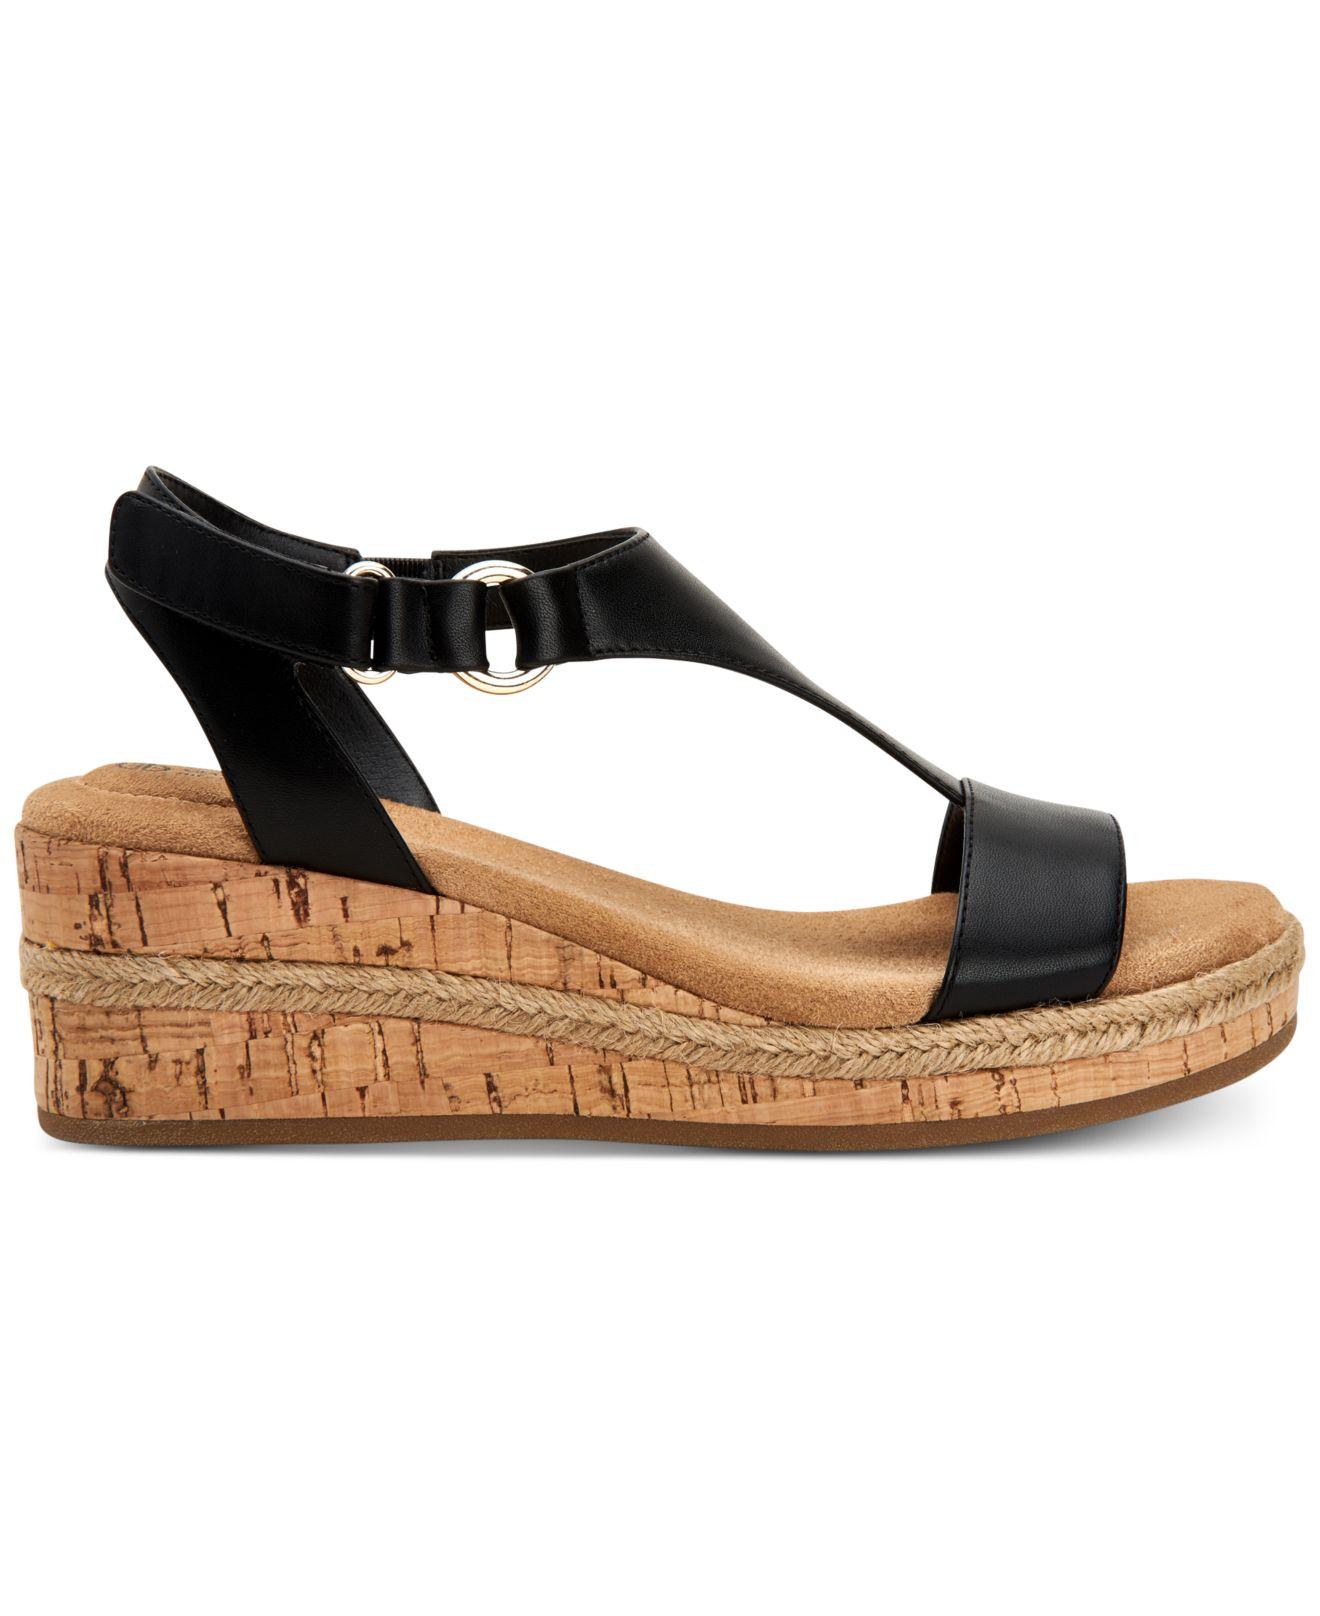 Giani Bernini Terrii Wedge Sandals, Created For Macy's in Black - Lyst